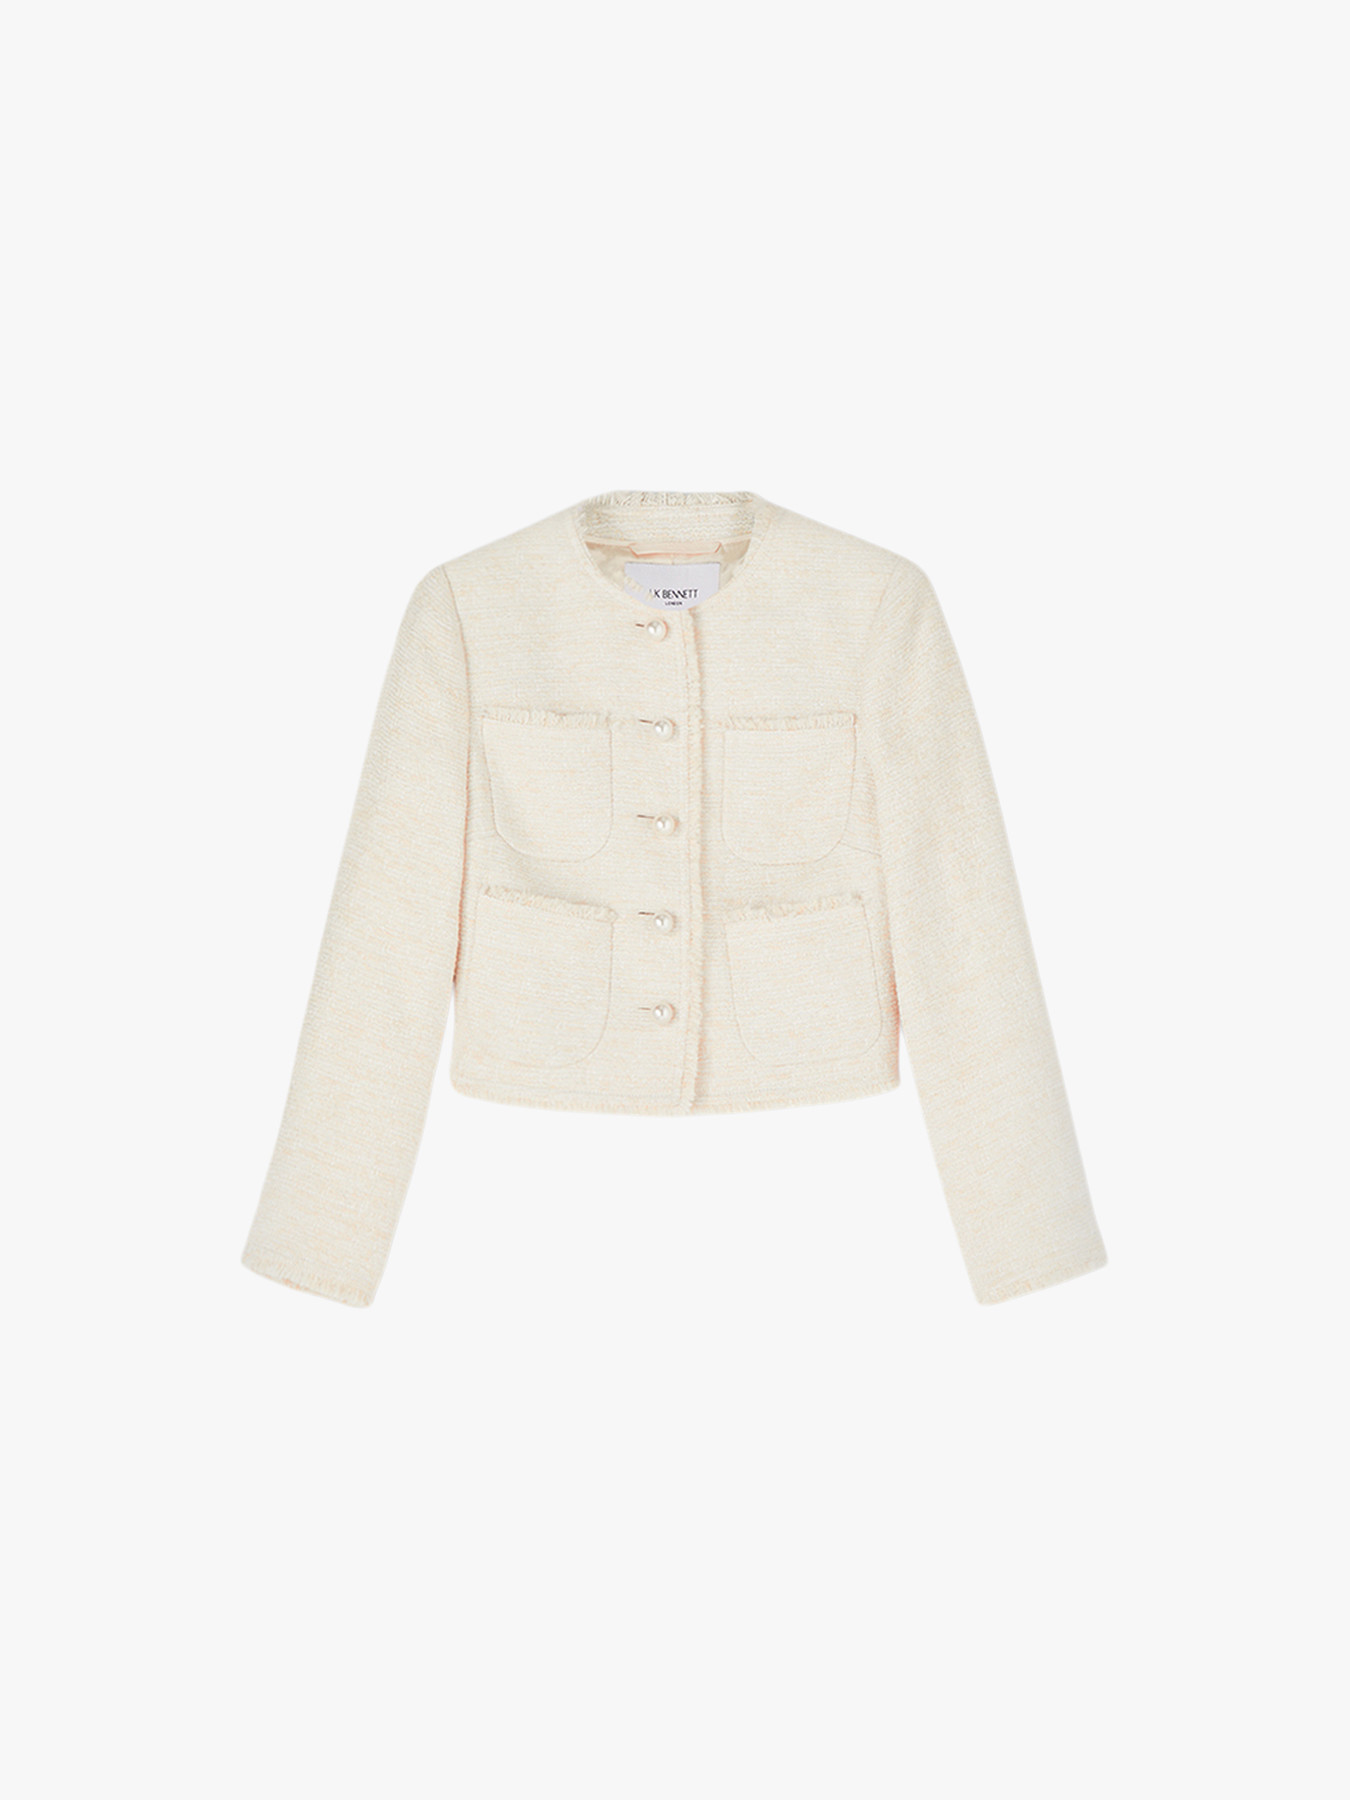 LK Bennett Celeste Cream Tweed Cropped Jacket | Tailored | Fenwick